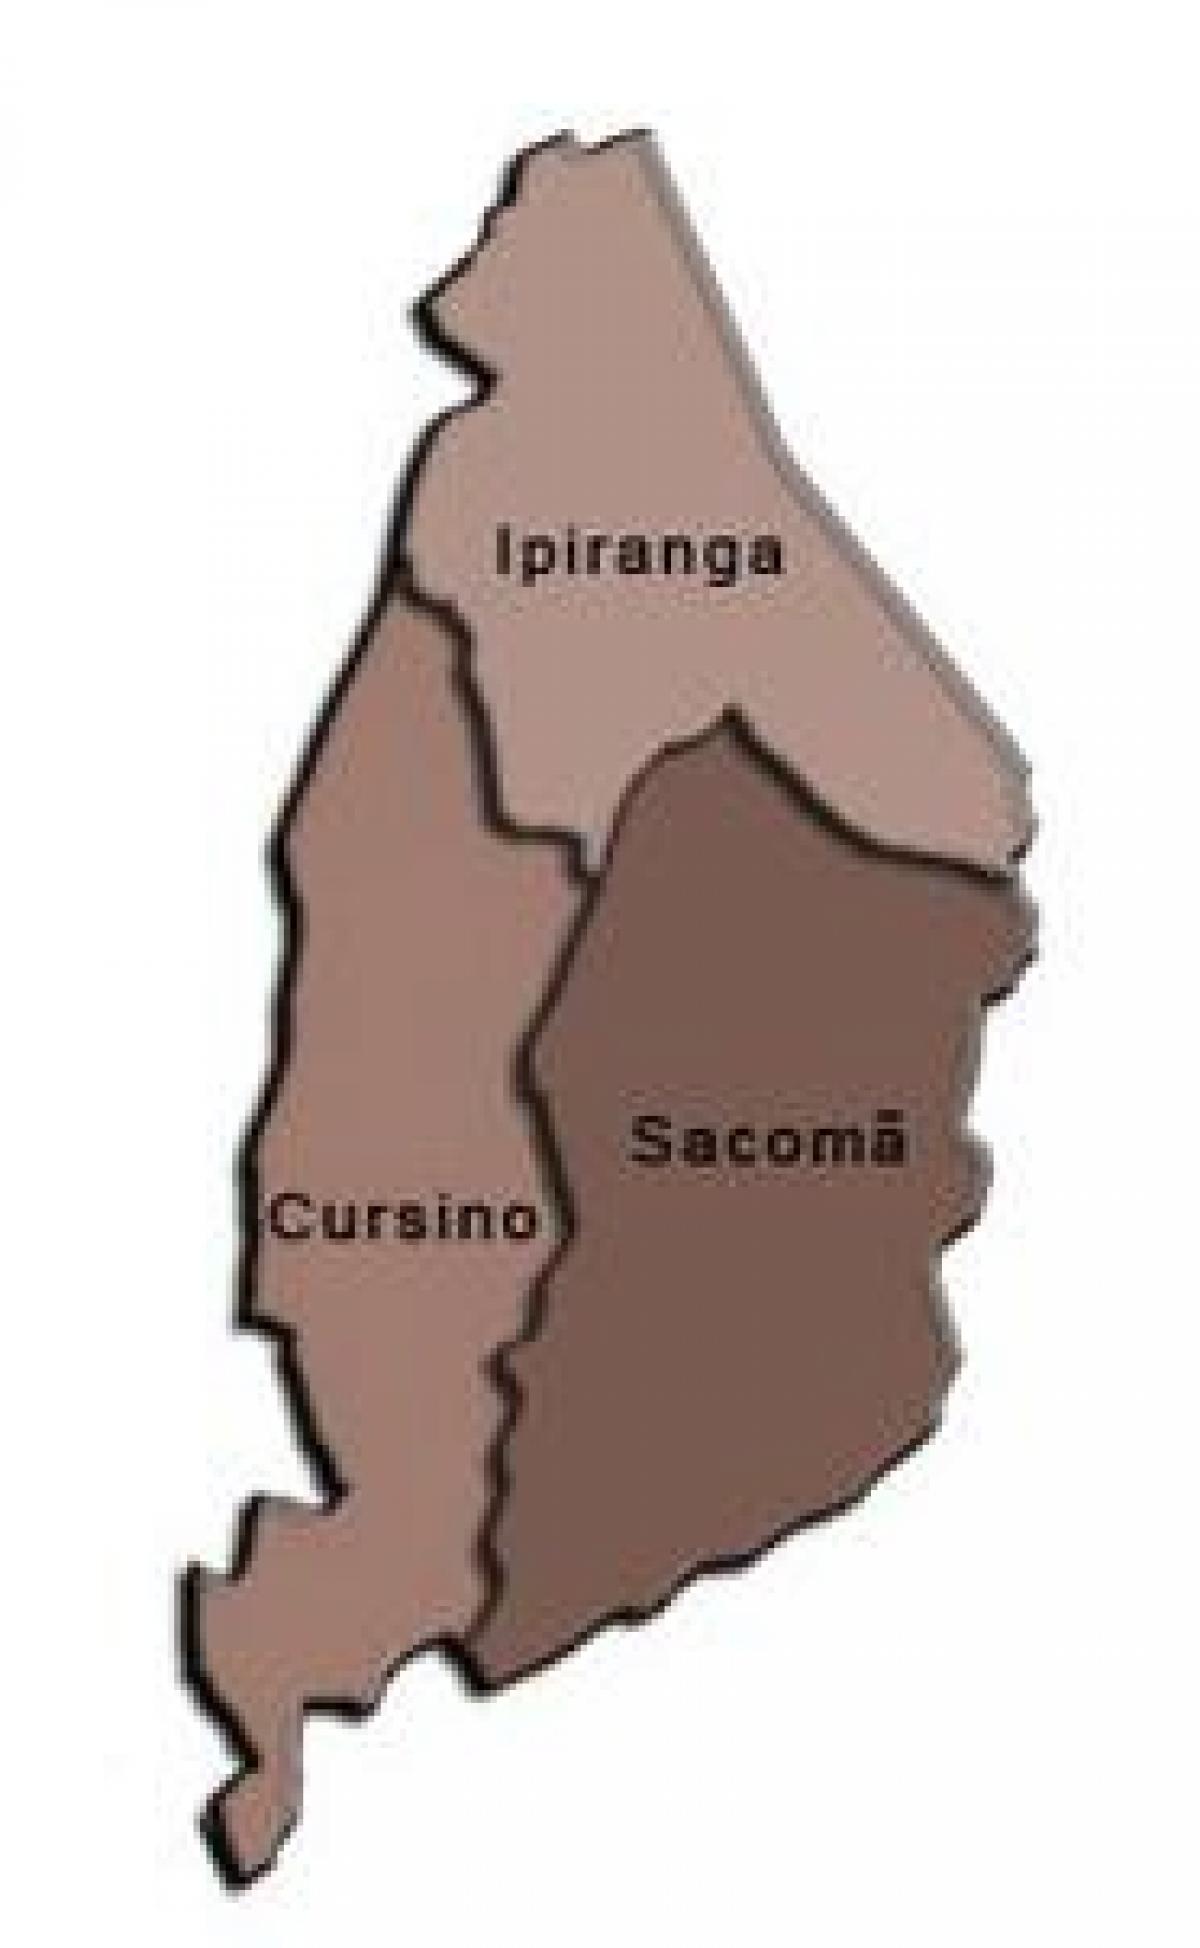 خريطة Ipiranga الفرعية.